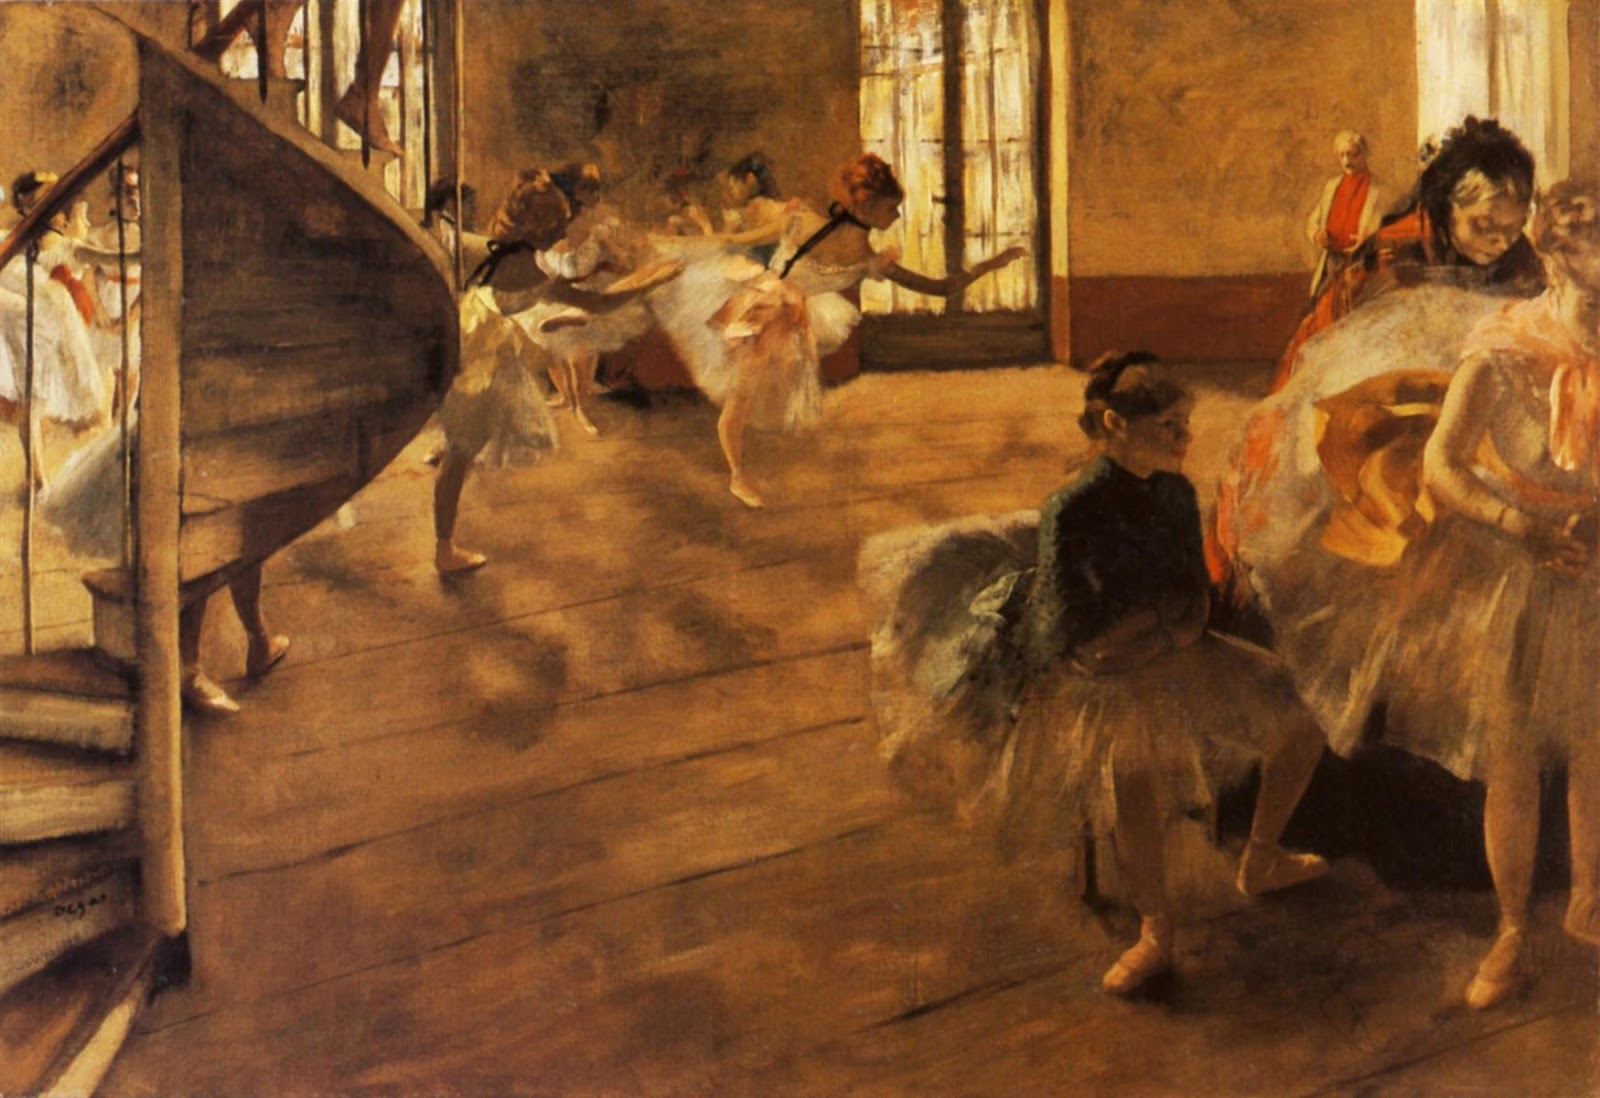 Edgar+Degas-1834-1917 (714).jpg